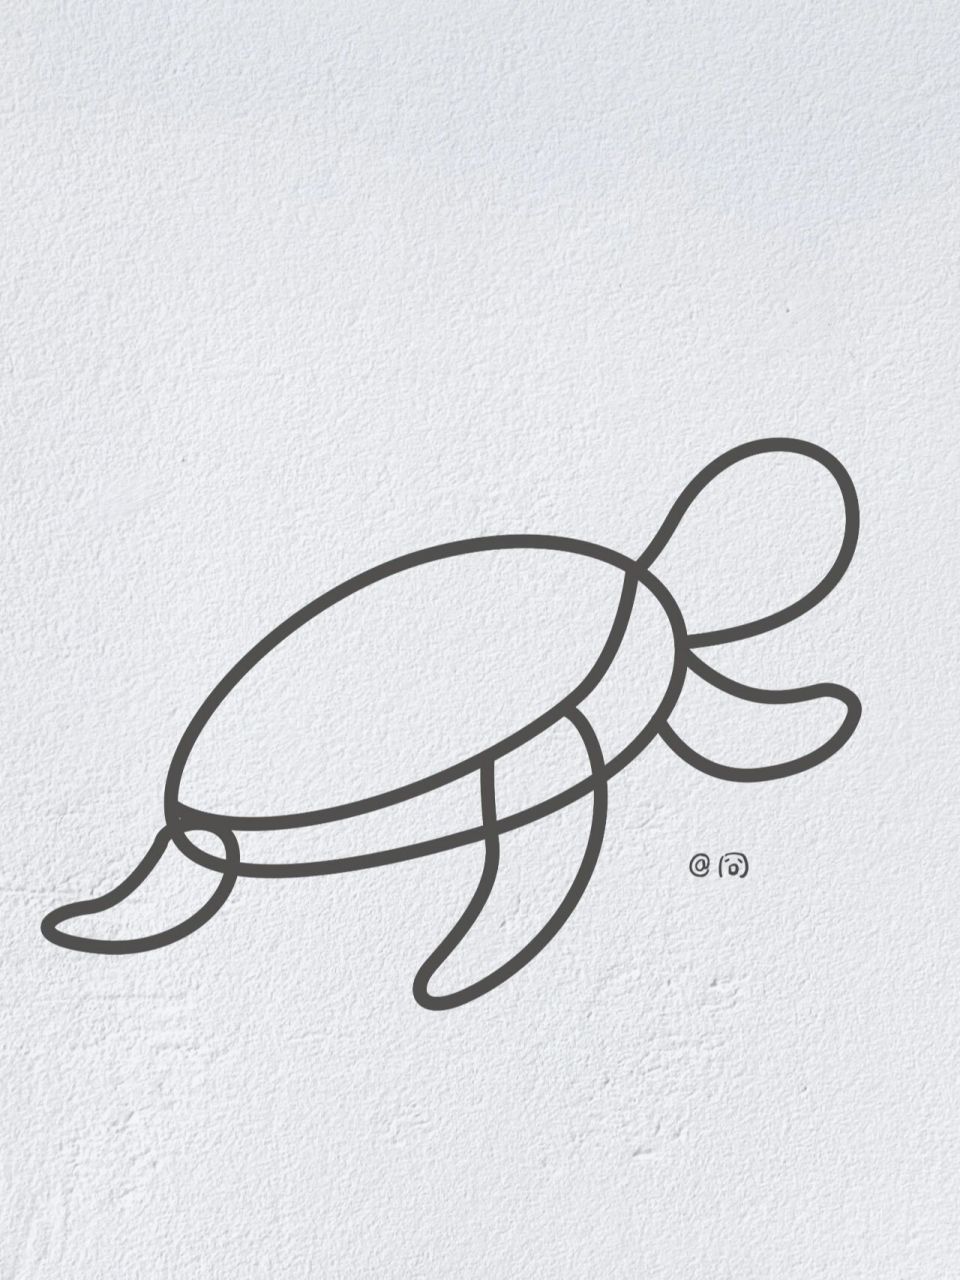 海龟简笔画在家里图片